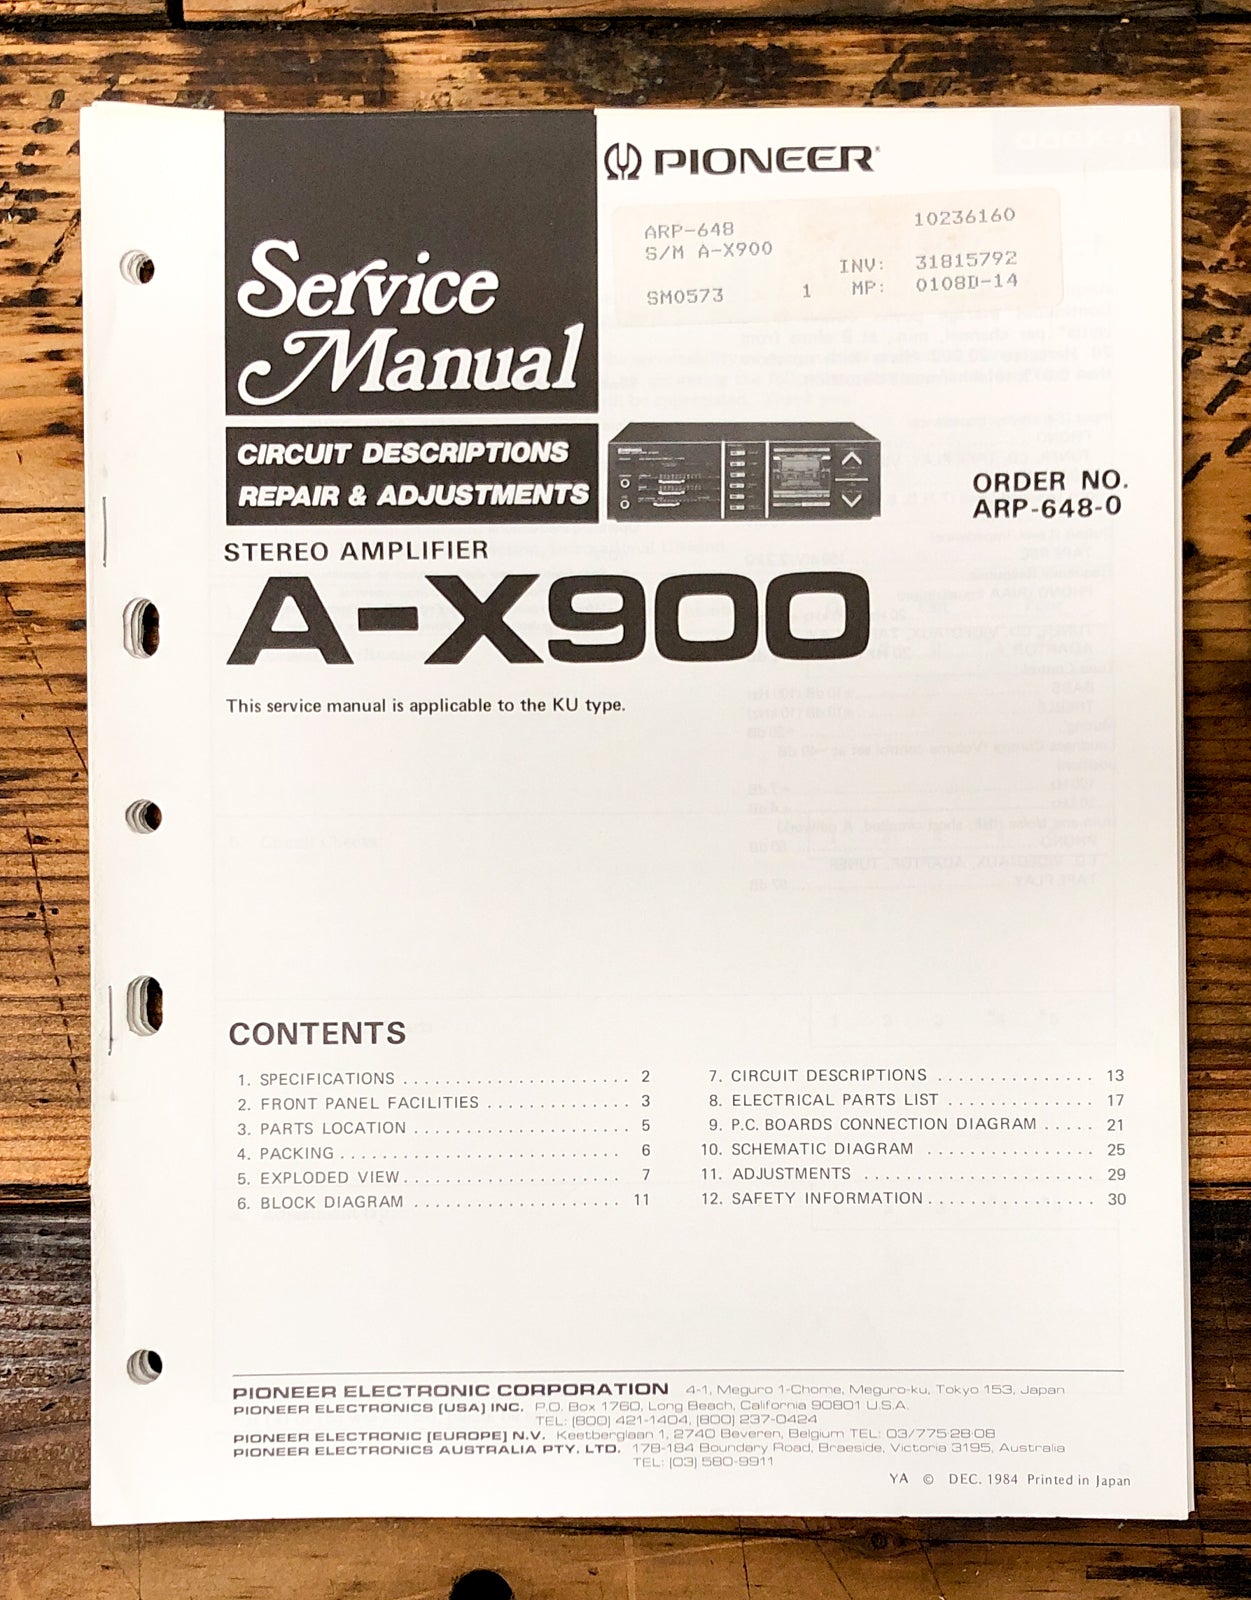 Pioneer A-X900 Amplifier Service Manual *Original*